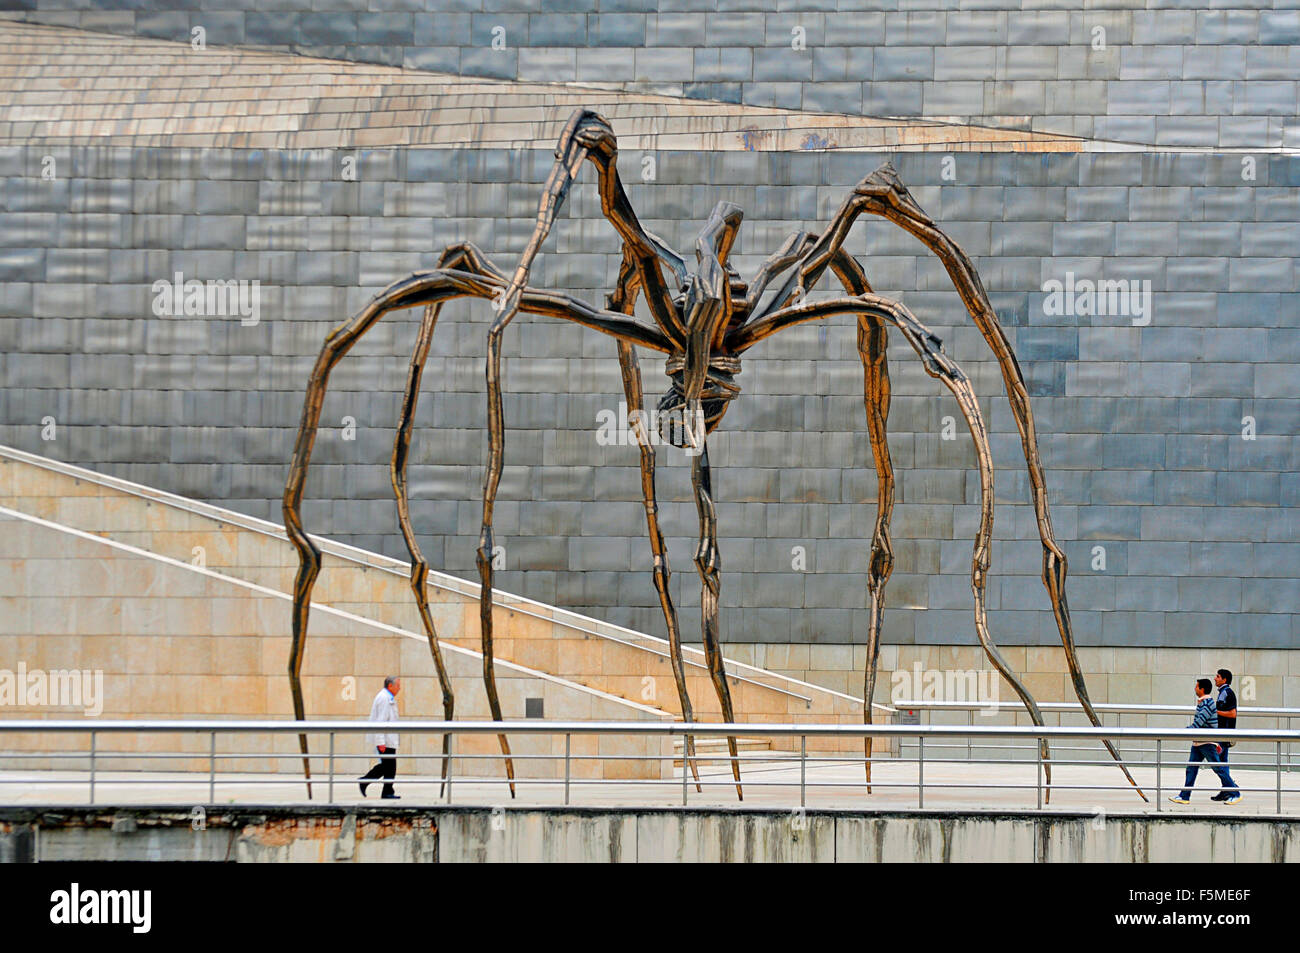 Maman, spider sculpture de Louise Bourgeois en face de Musée Guggenheim de Bilbao, Pays Basque, Espagne Banque D'Images